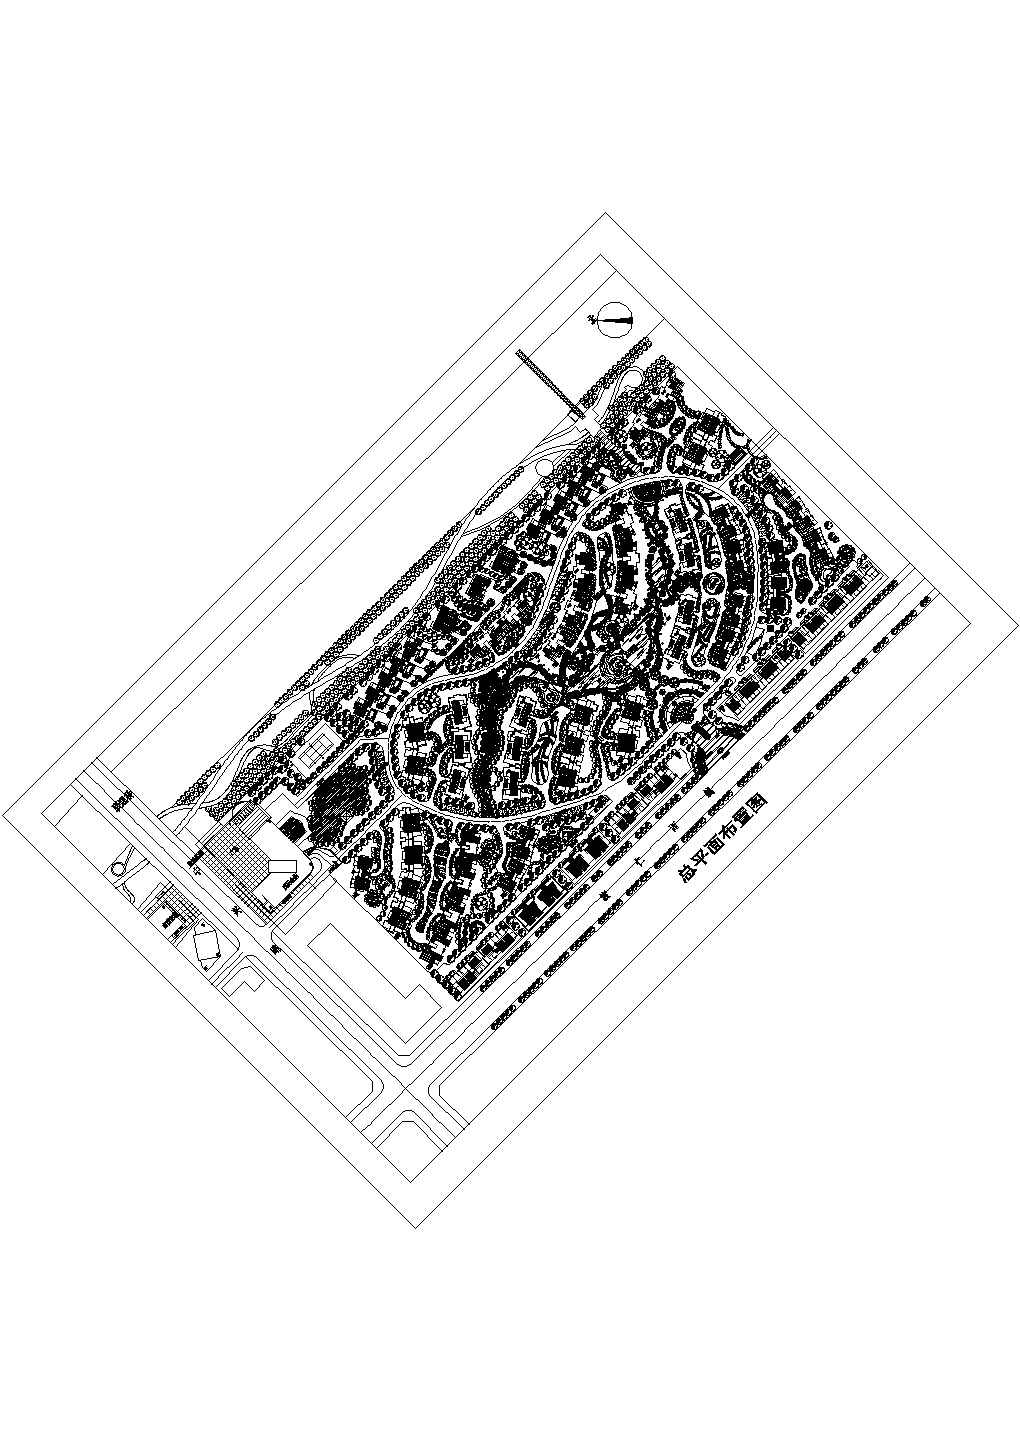 公园道一号道路CAD图纸